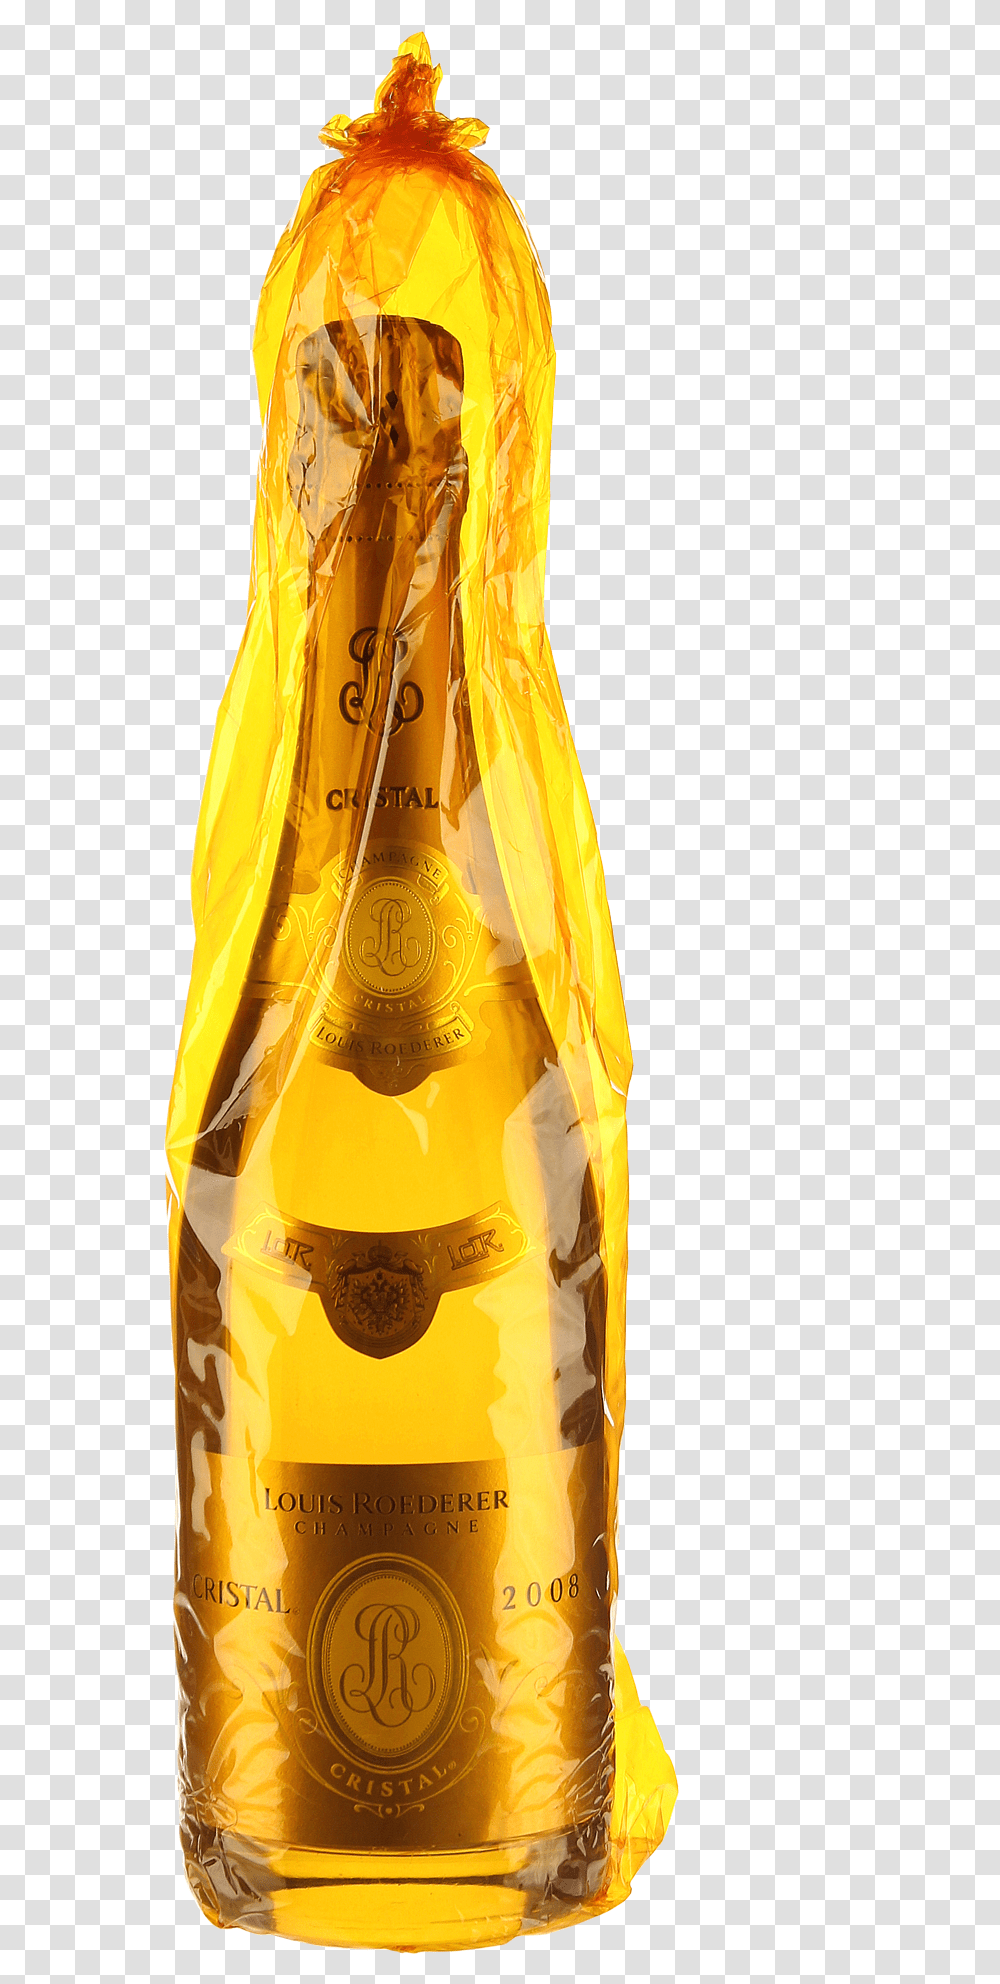 2008 Champagne Brut CristalquotTitlequot2008 Champagne Glass Bottle, Apparel, Coat, Raincoat Transparent Png